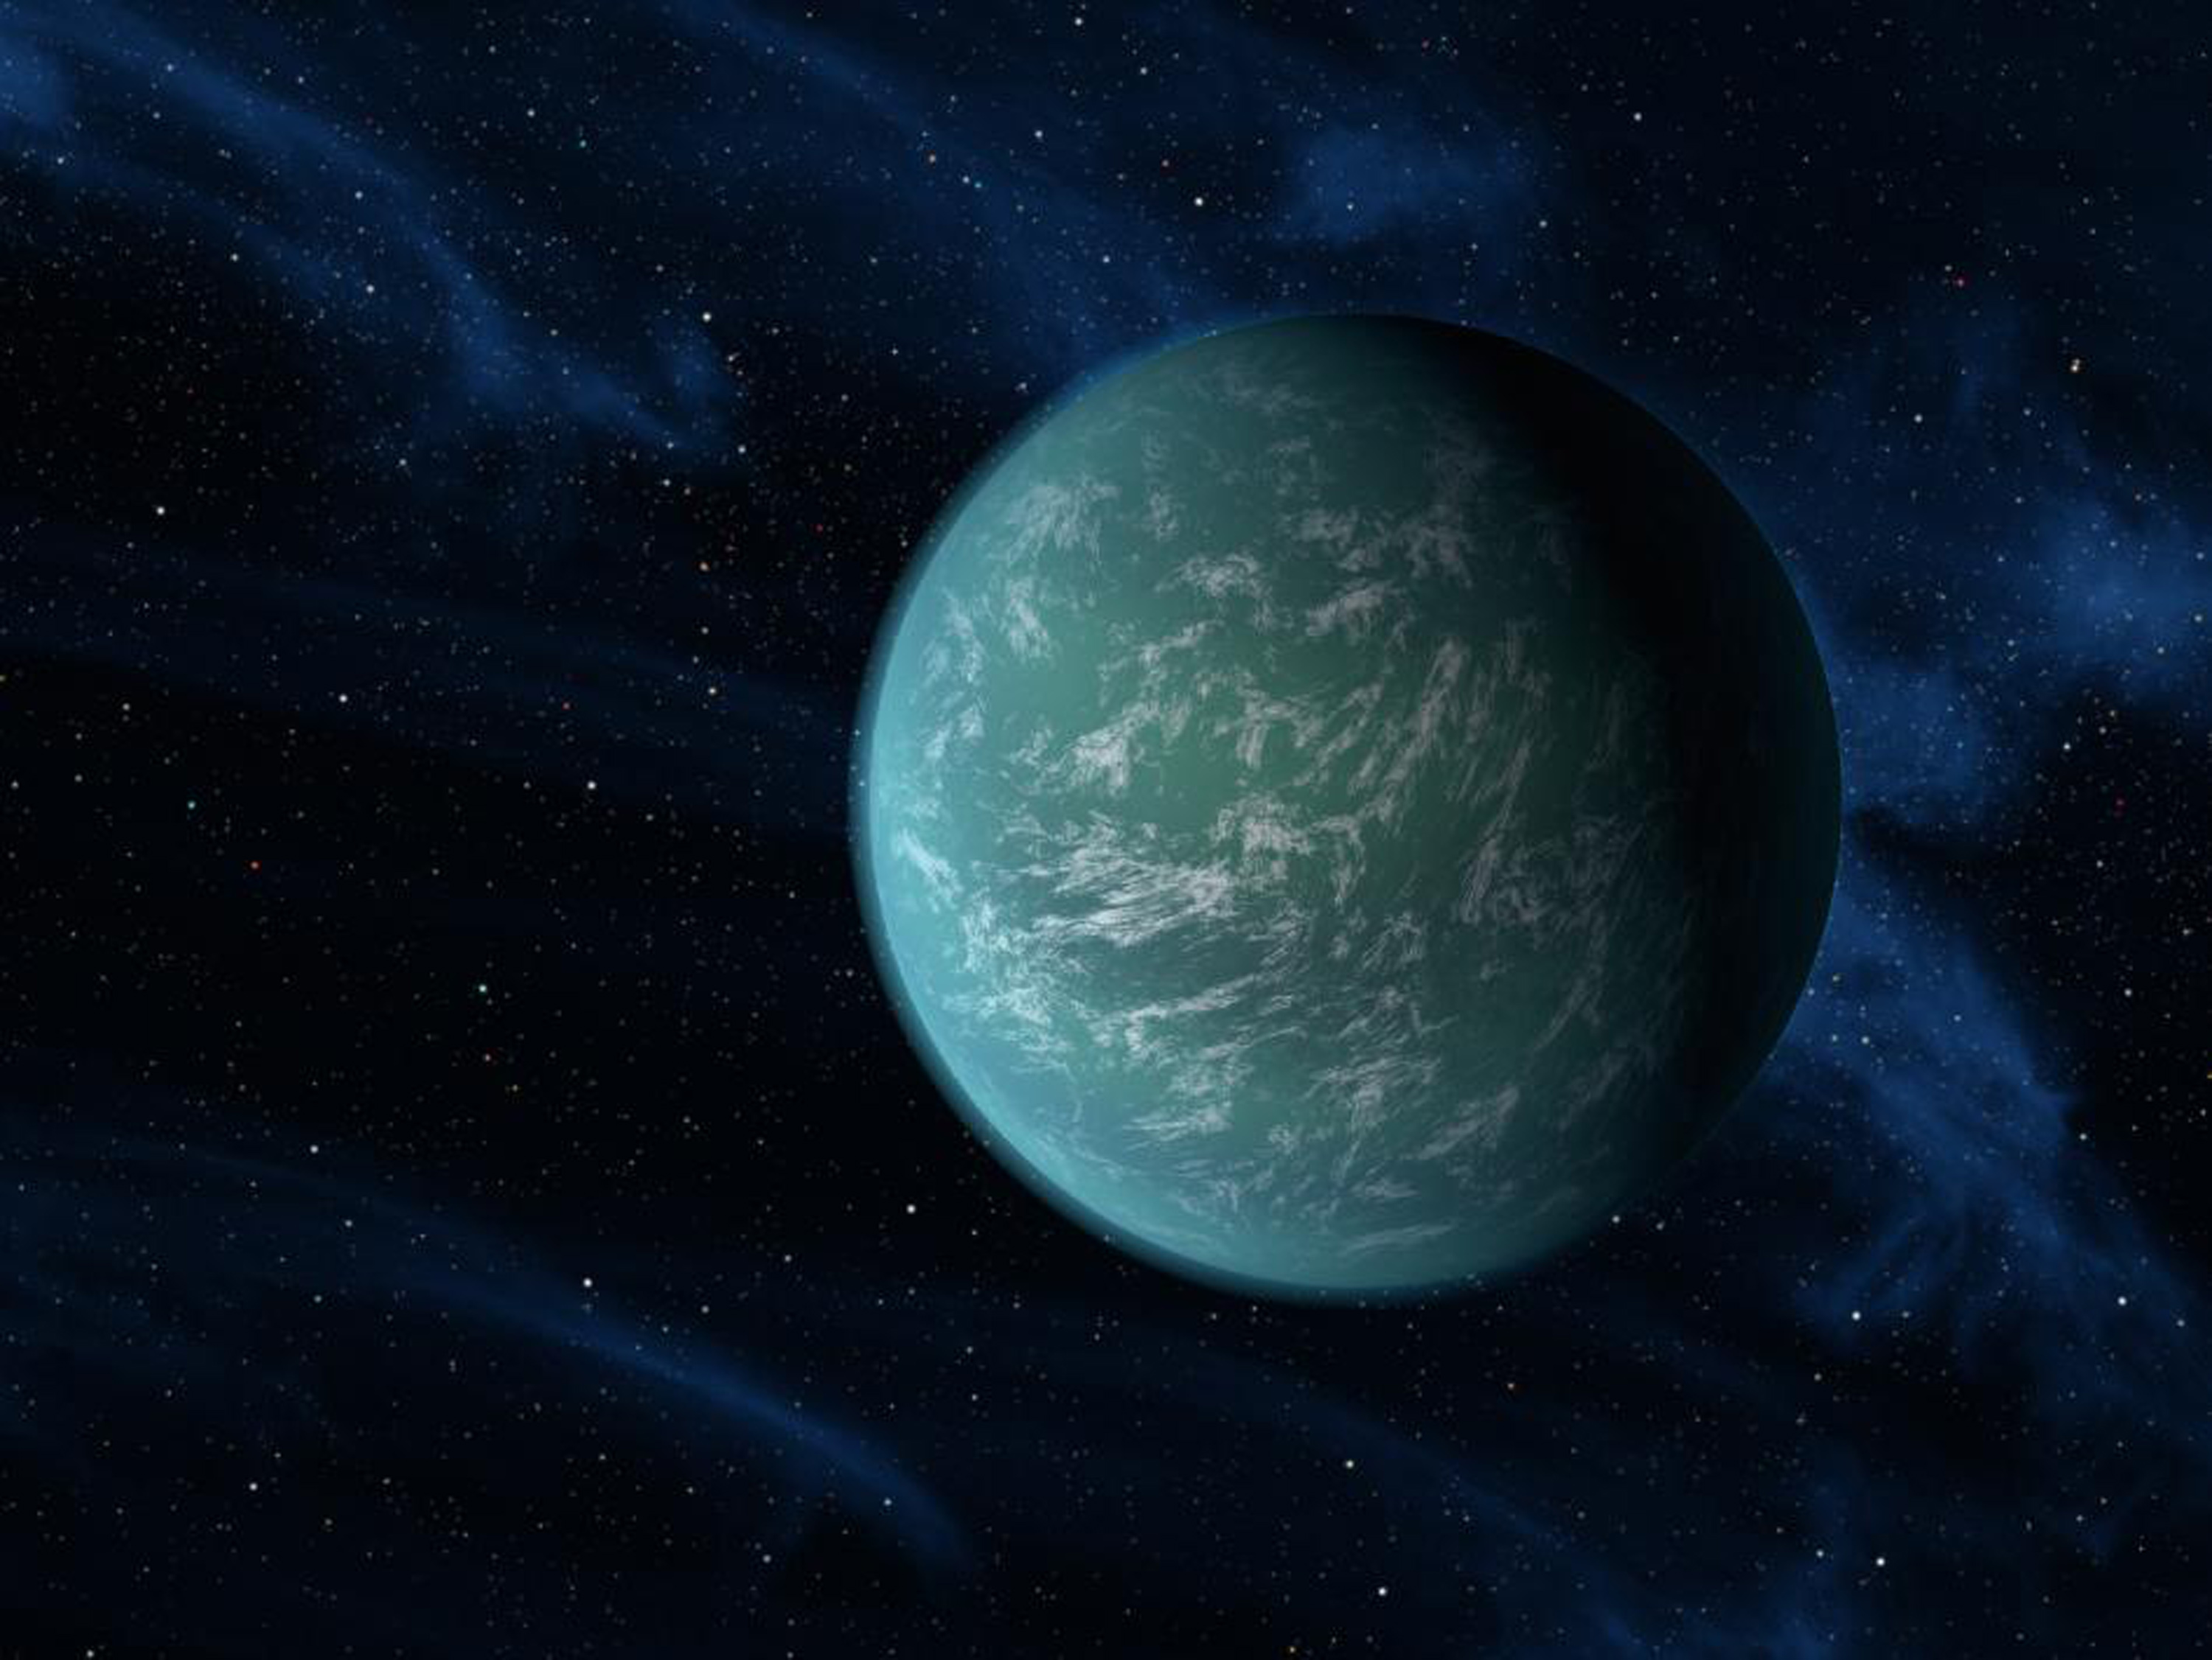 Nasa avslöjade i början av december att man har hittat en planet utanför vårt solsystem som påminner starkt om jorden - Kepler-22b.